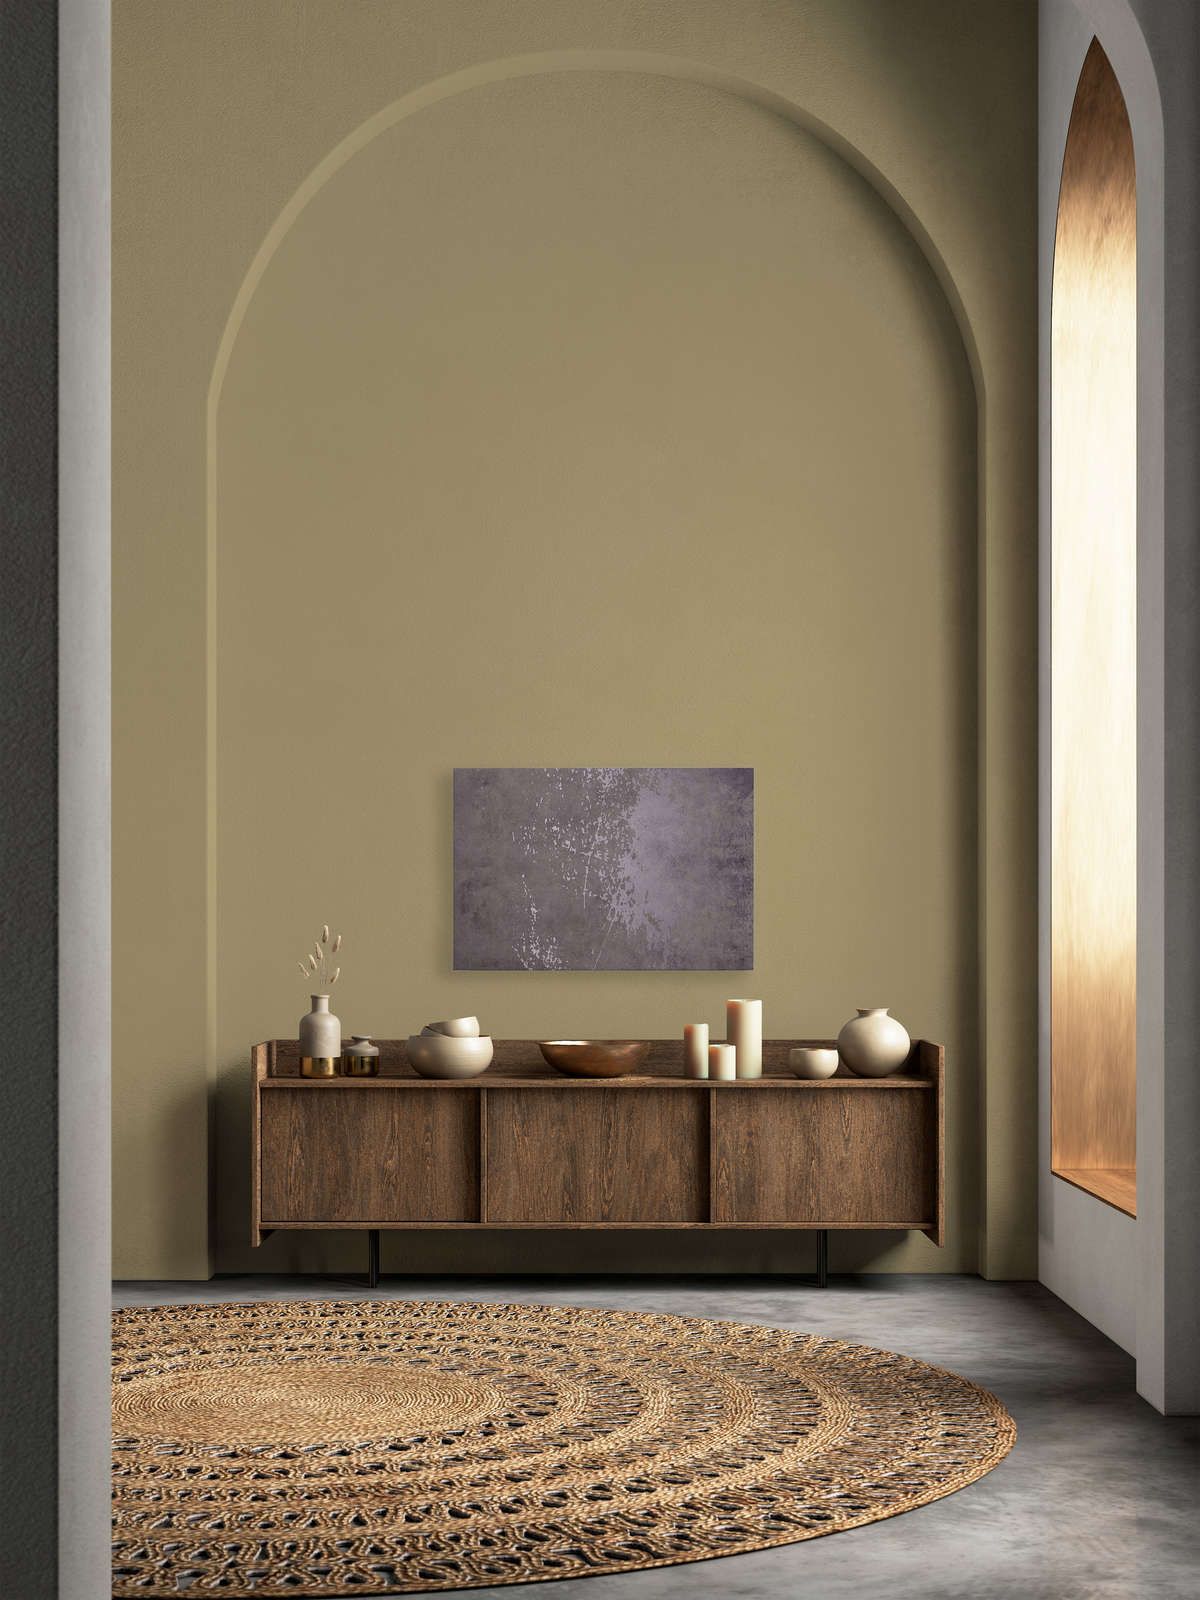             Vintage Wall 2 - Toile lilas aspect plâtre design usé - 0,90 m x 0,60 m
        